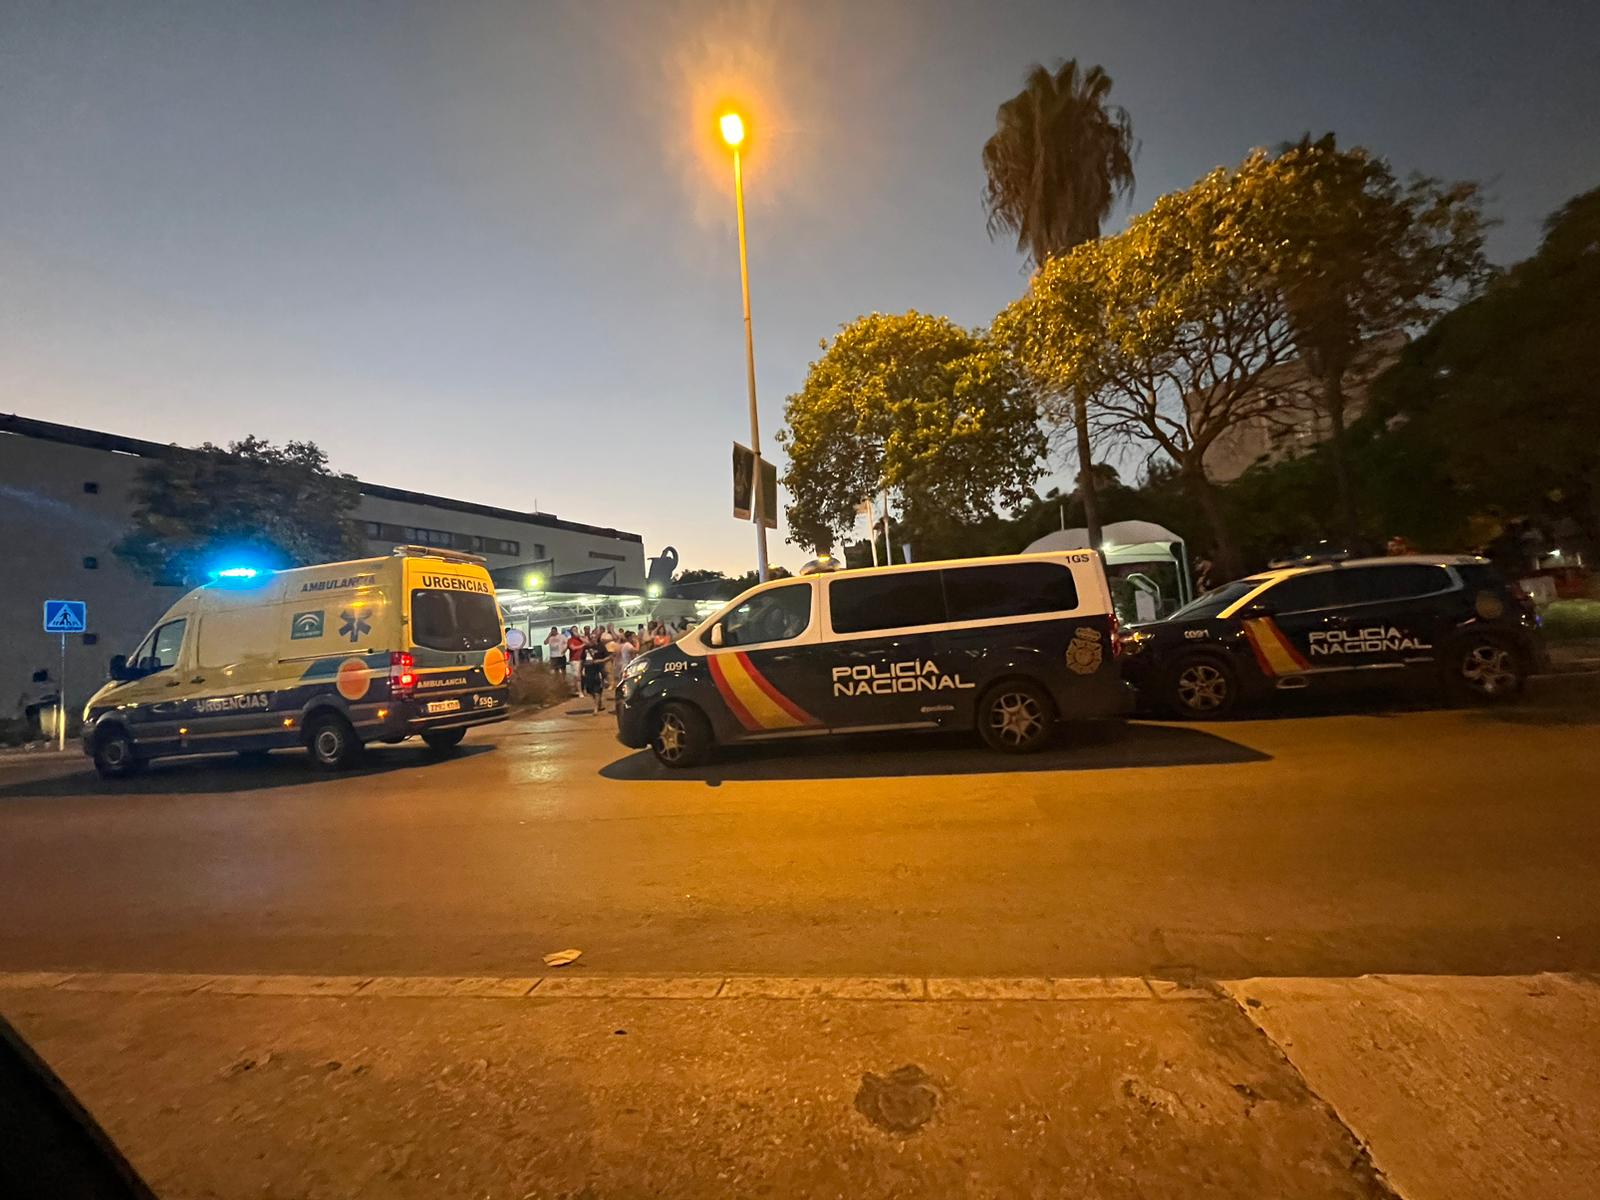 La avenida donde han ocurrido los hechos, este viernes en Jerez, con presencia de ambulancias y Policía.